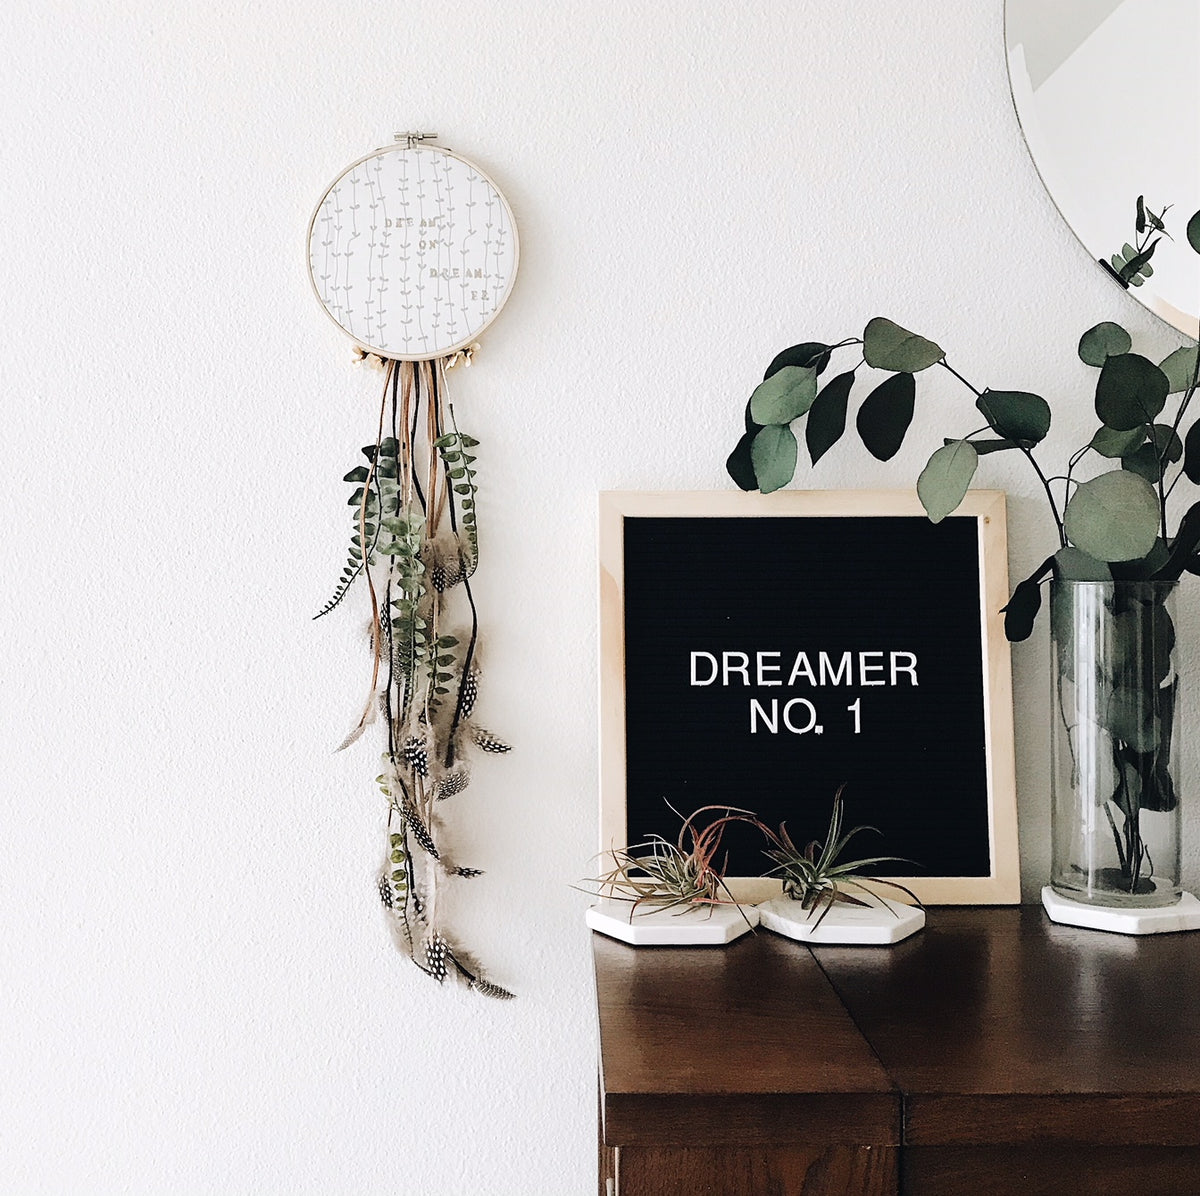 Dreamer No. 1 | 100 Days of Dreamers